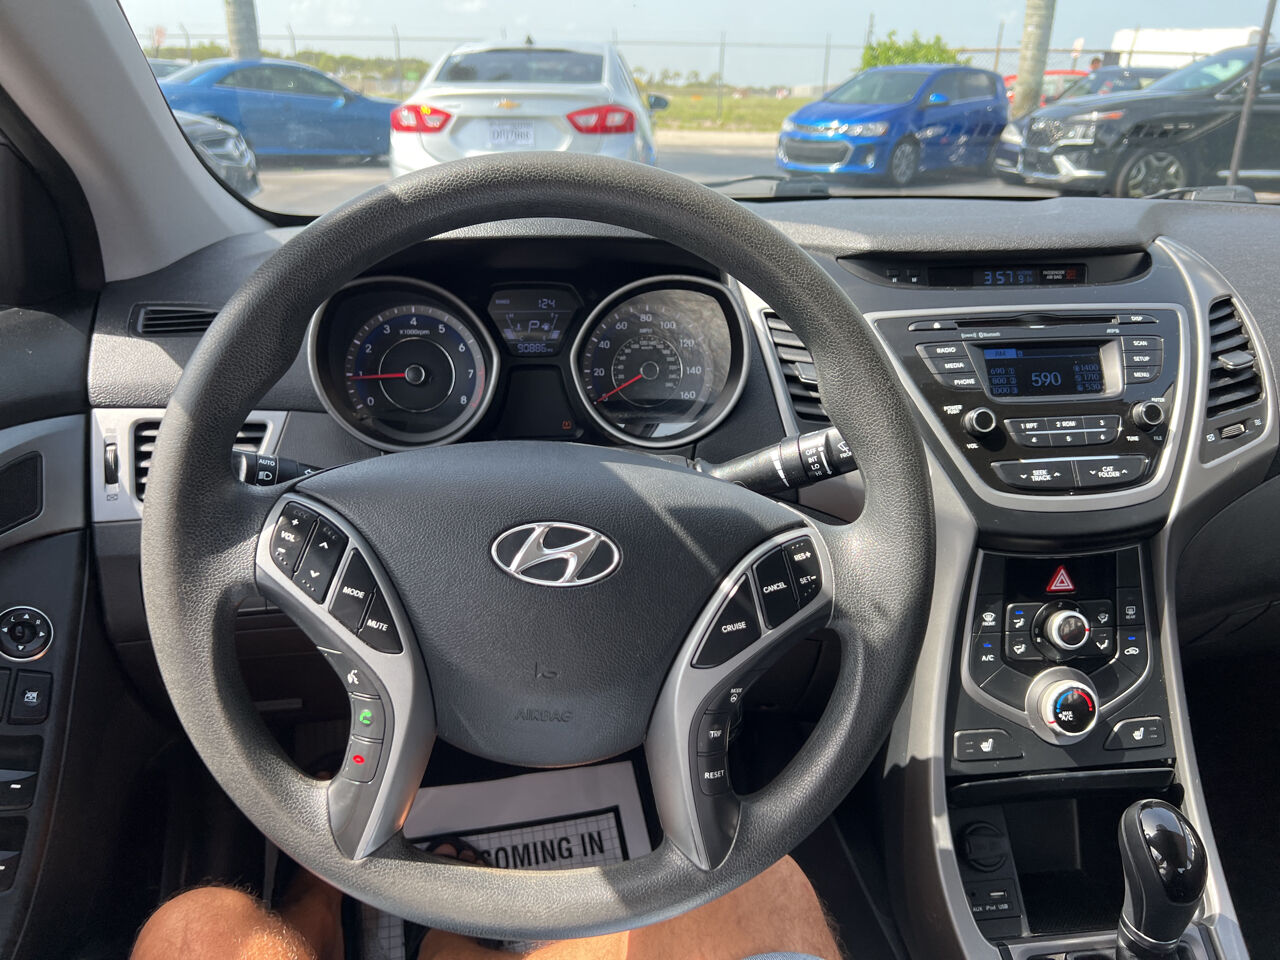 2016 Hyundai Elantra Sedan - $11,999